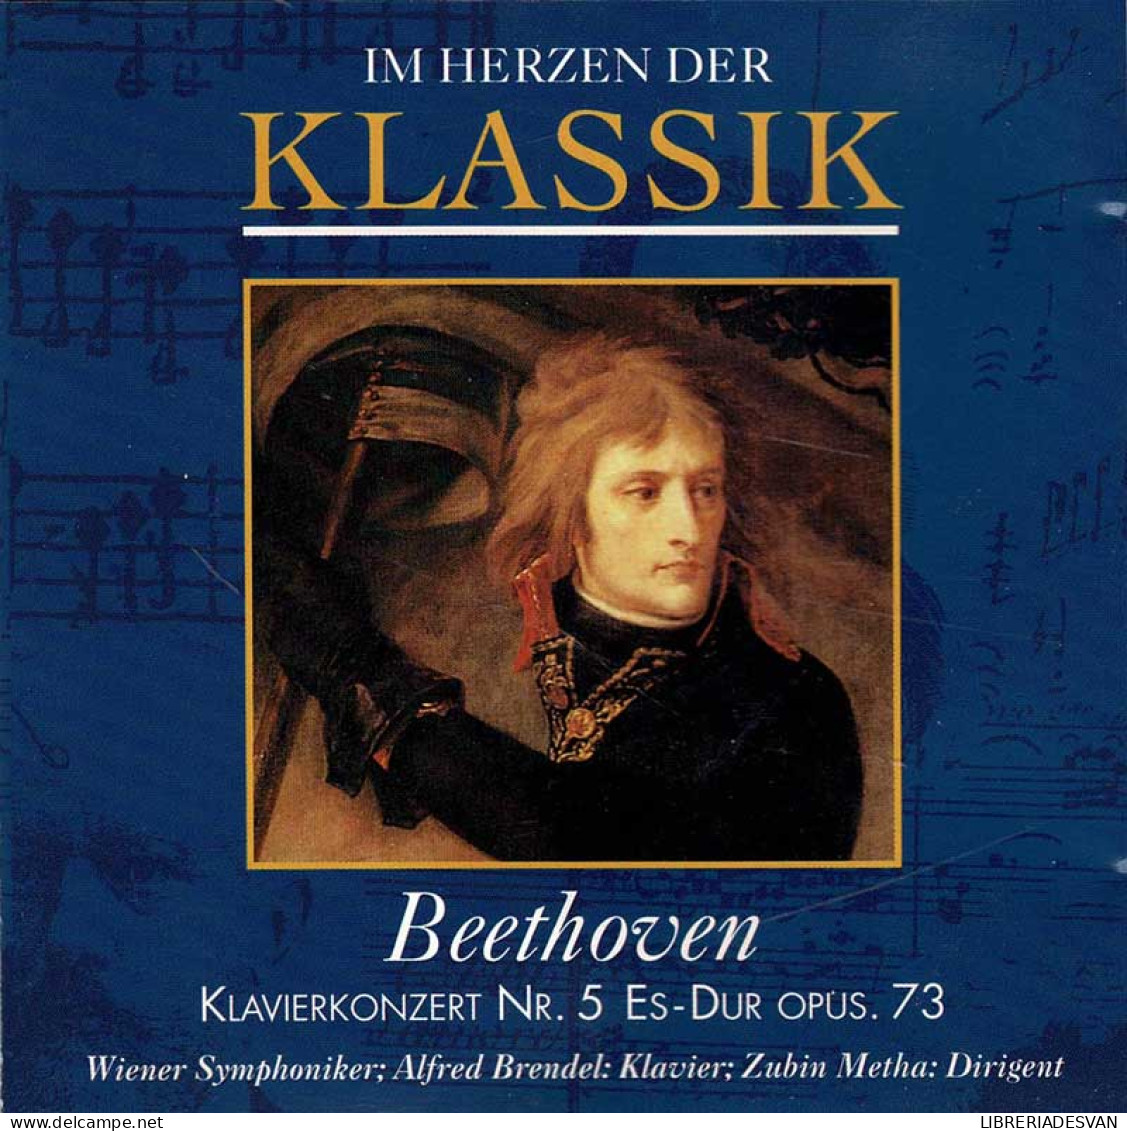 Beethoven - Klavierkonzert No. 5 Es-Dur Opus 73. CD - Classical